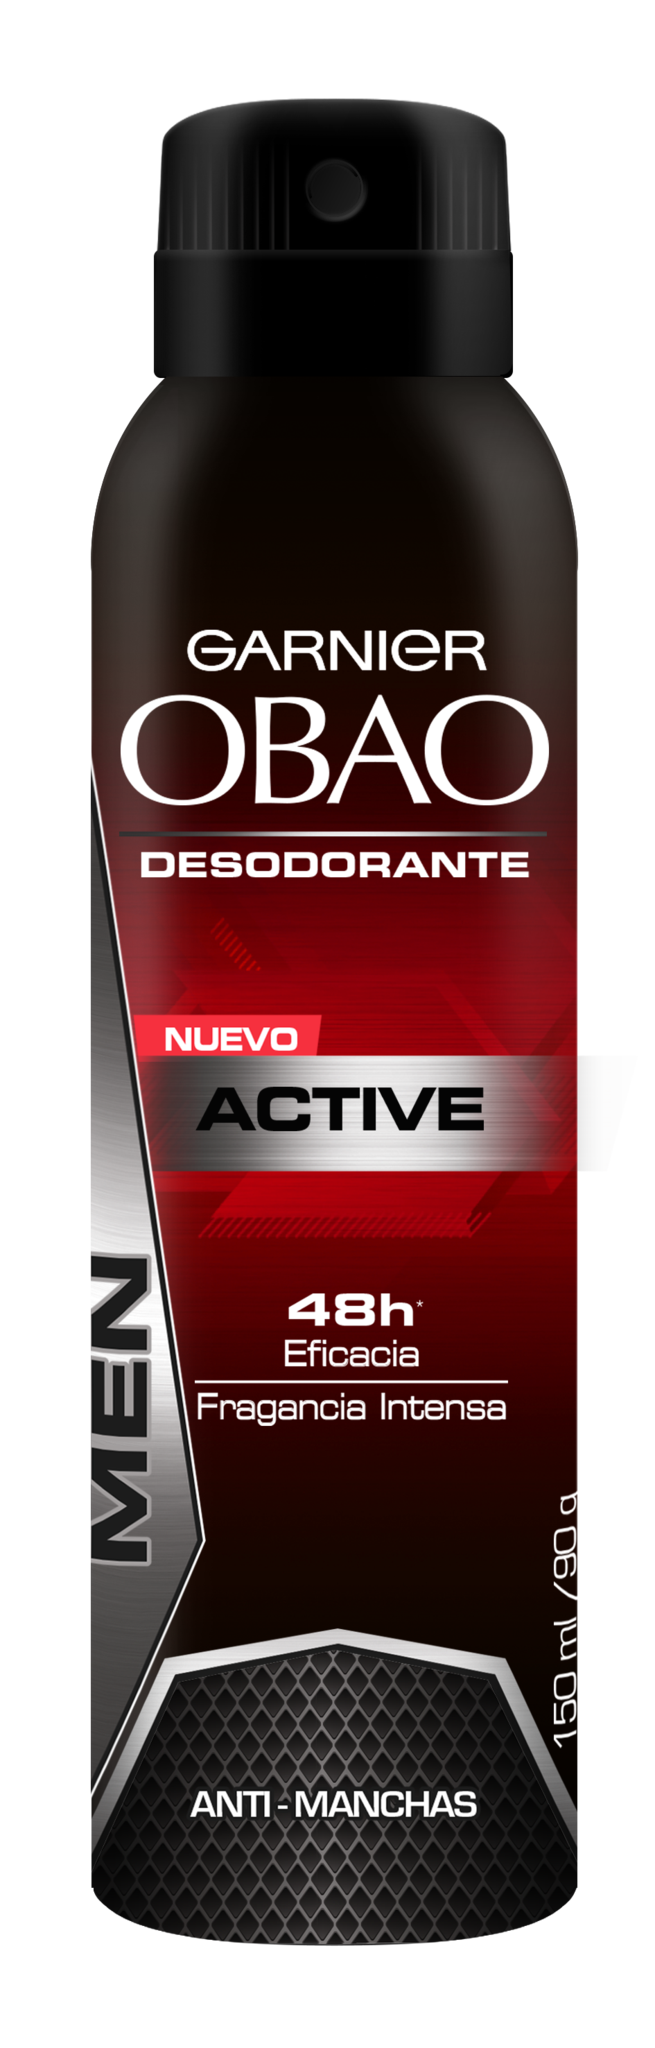 Media Caja Desodorante Obao Spray Hombre Active de 150 ml con 6 piezas - Garnier-Desodorantes-Garnier-MayoreoTotal